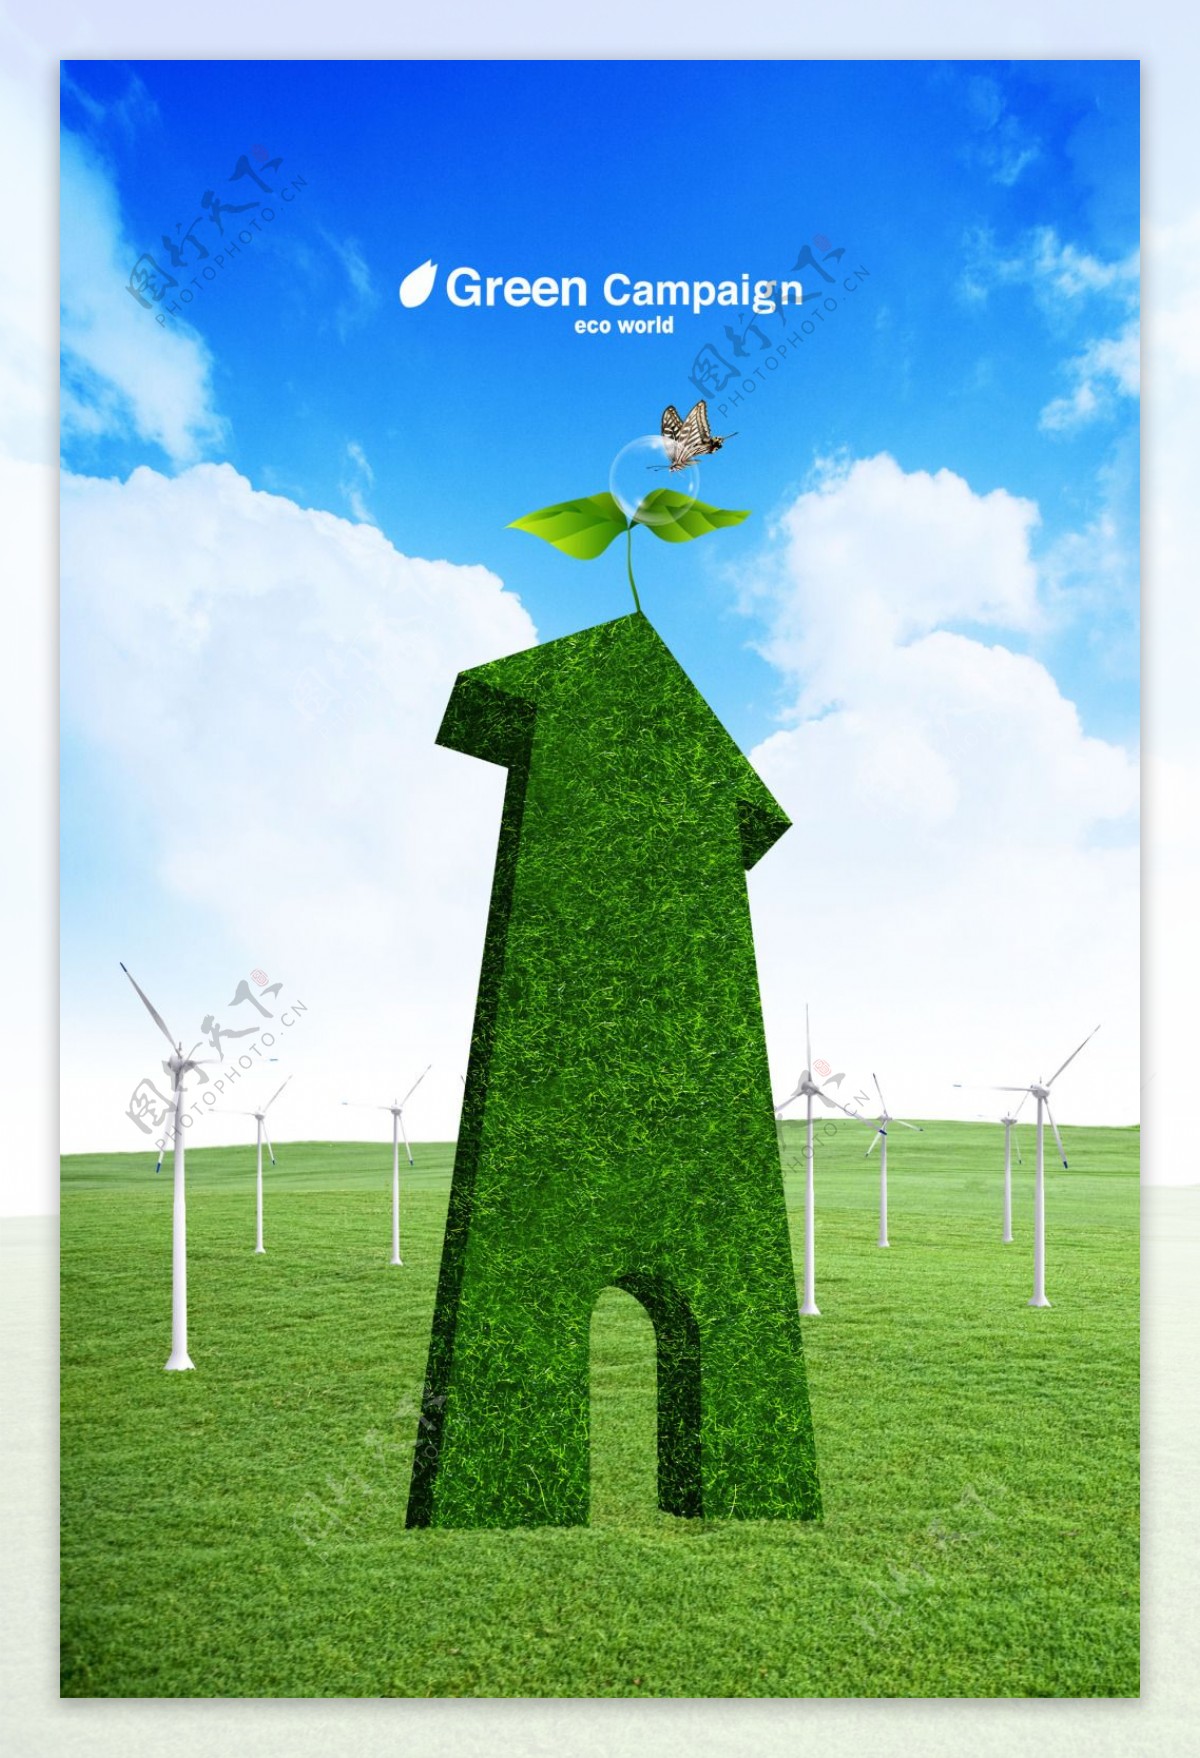 绿色环保创意背景图片素材免费下载 - 觅知网